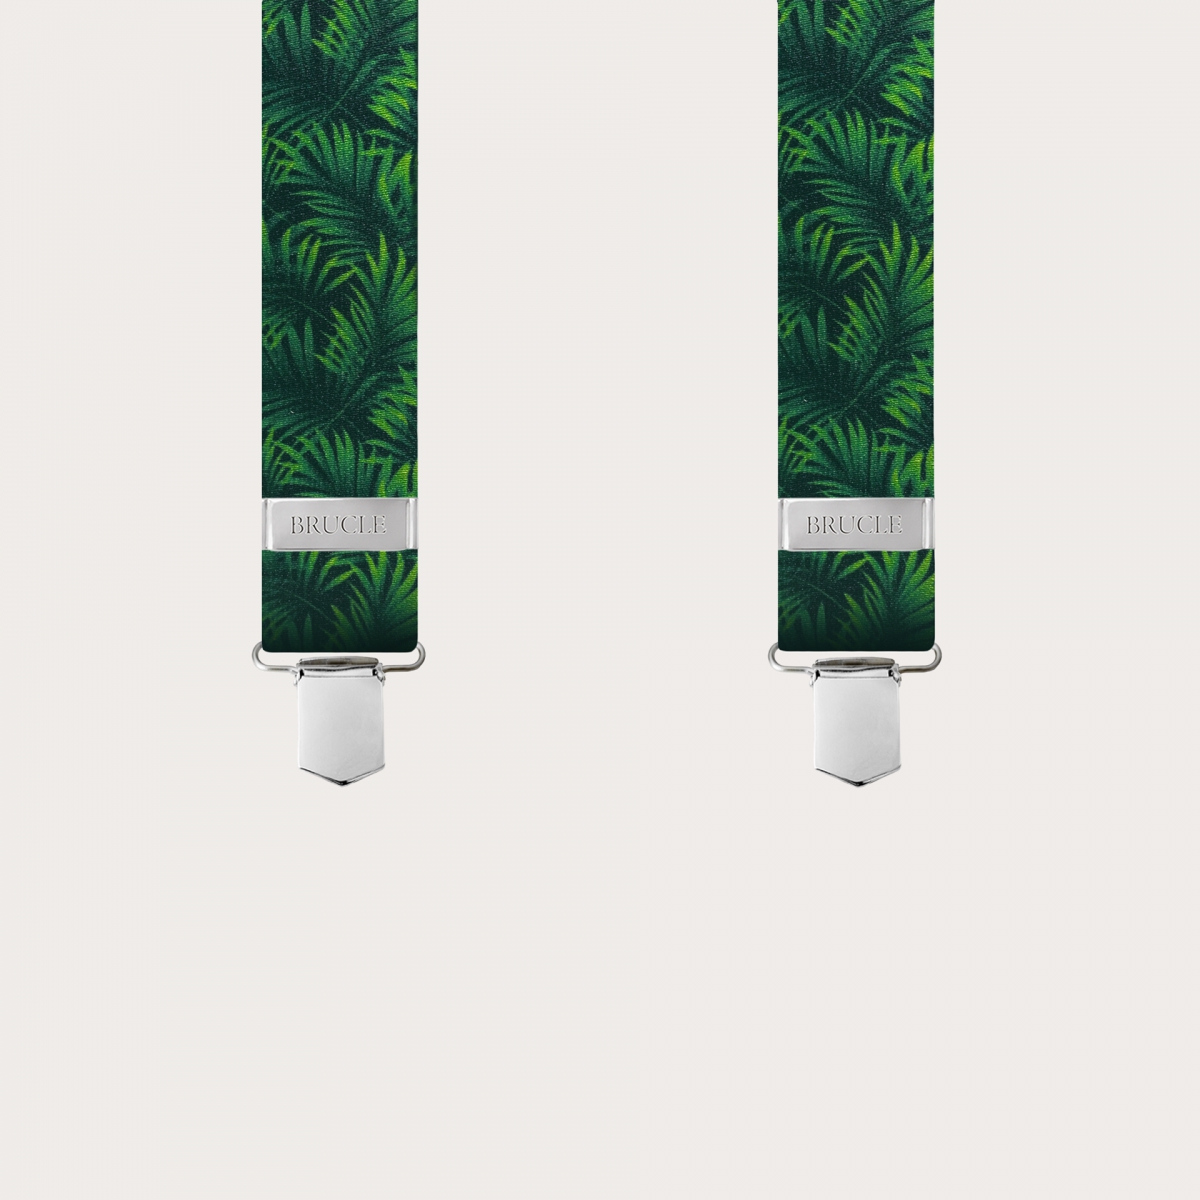 BRUCLE Elastische Hosenträger in X-Form in Satin-Optik, grün mit Palmblättern